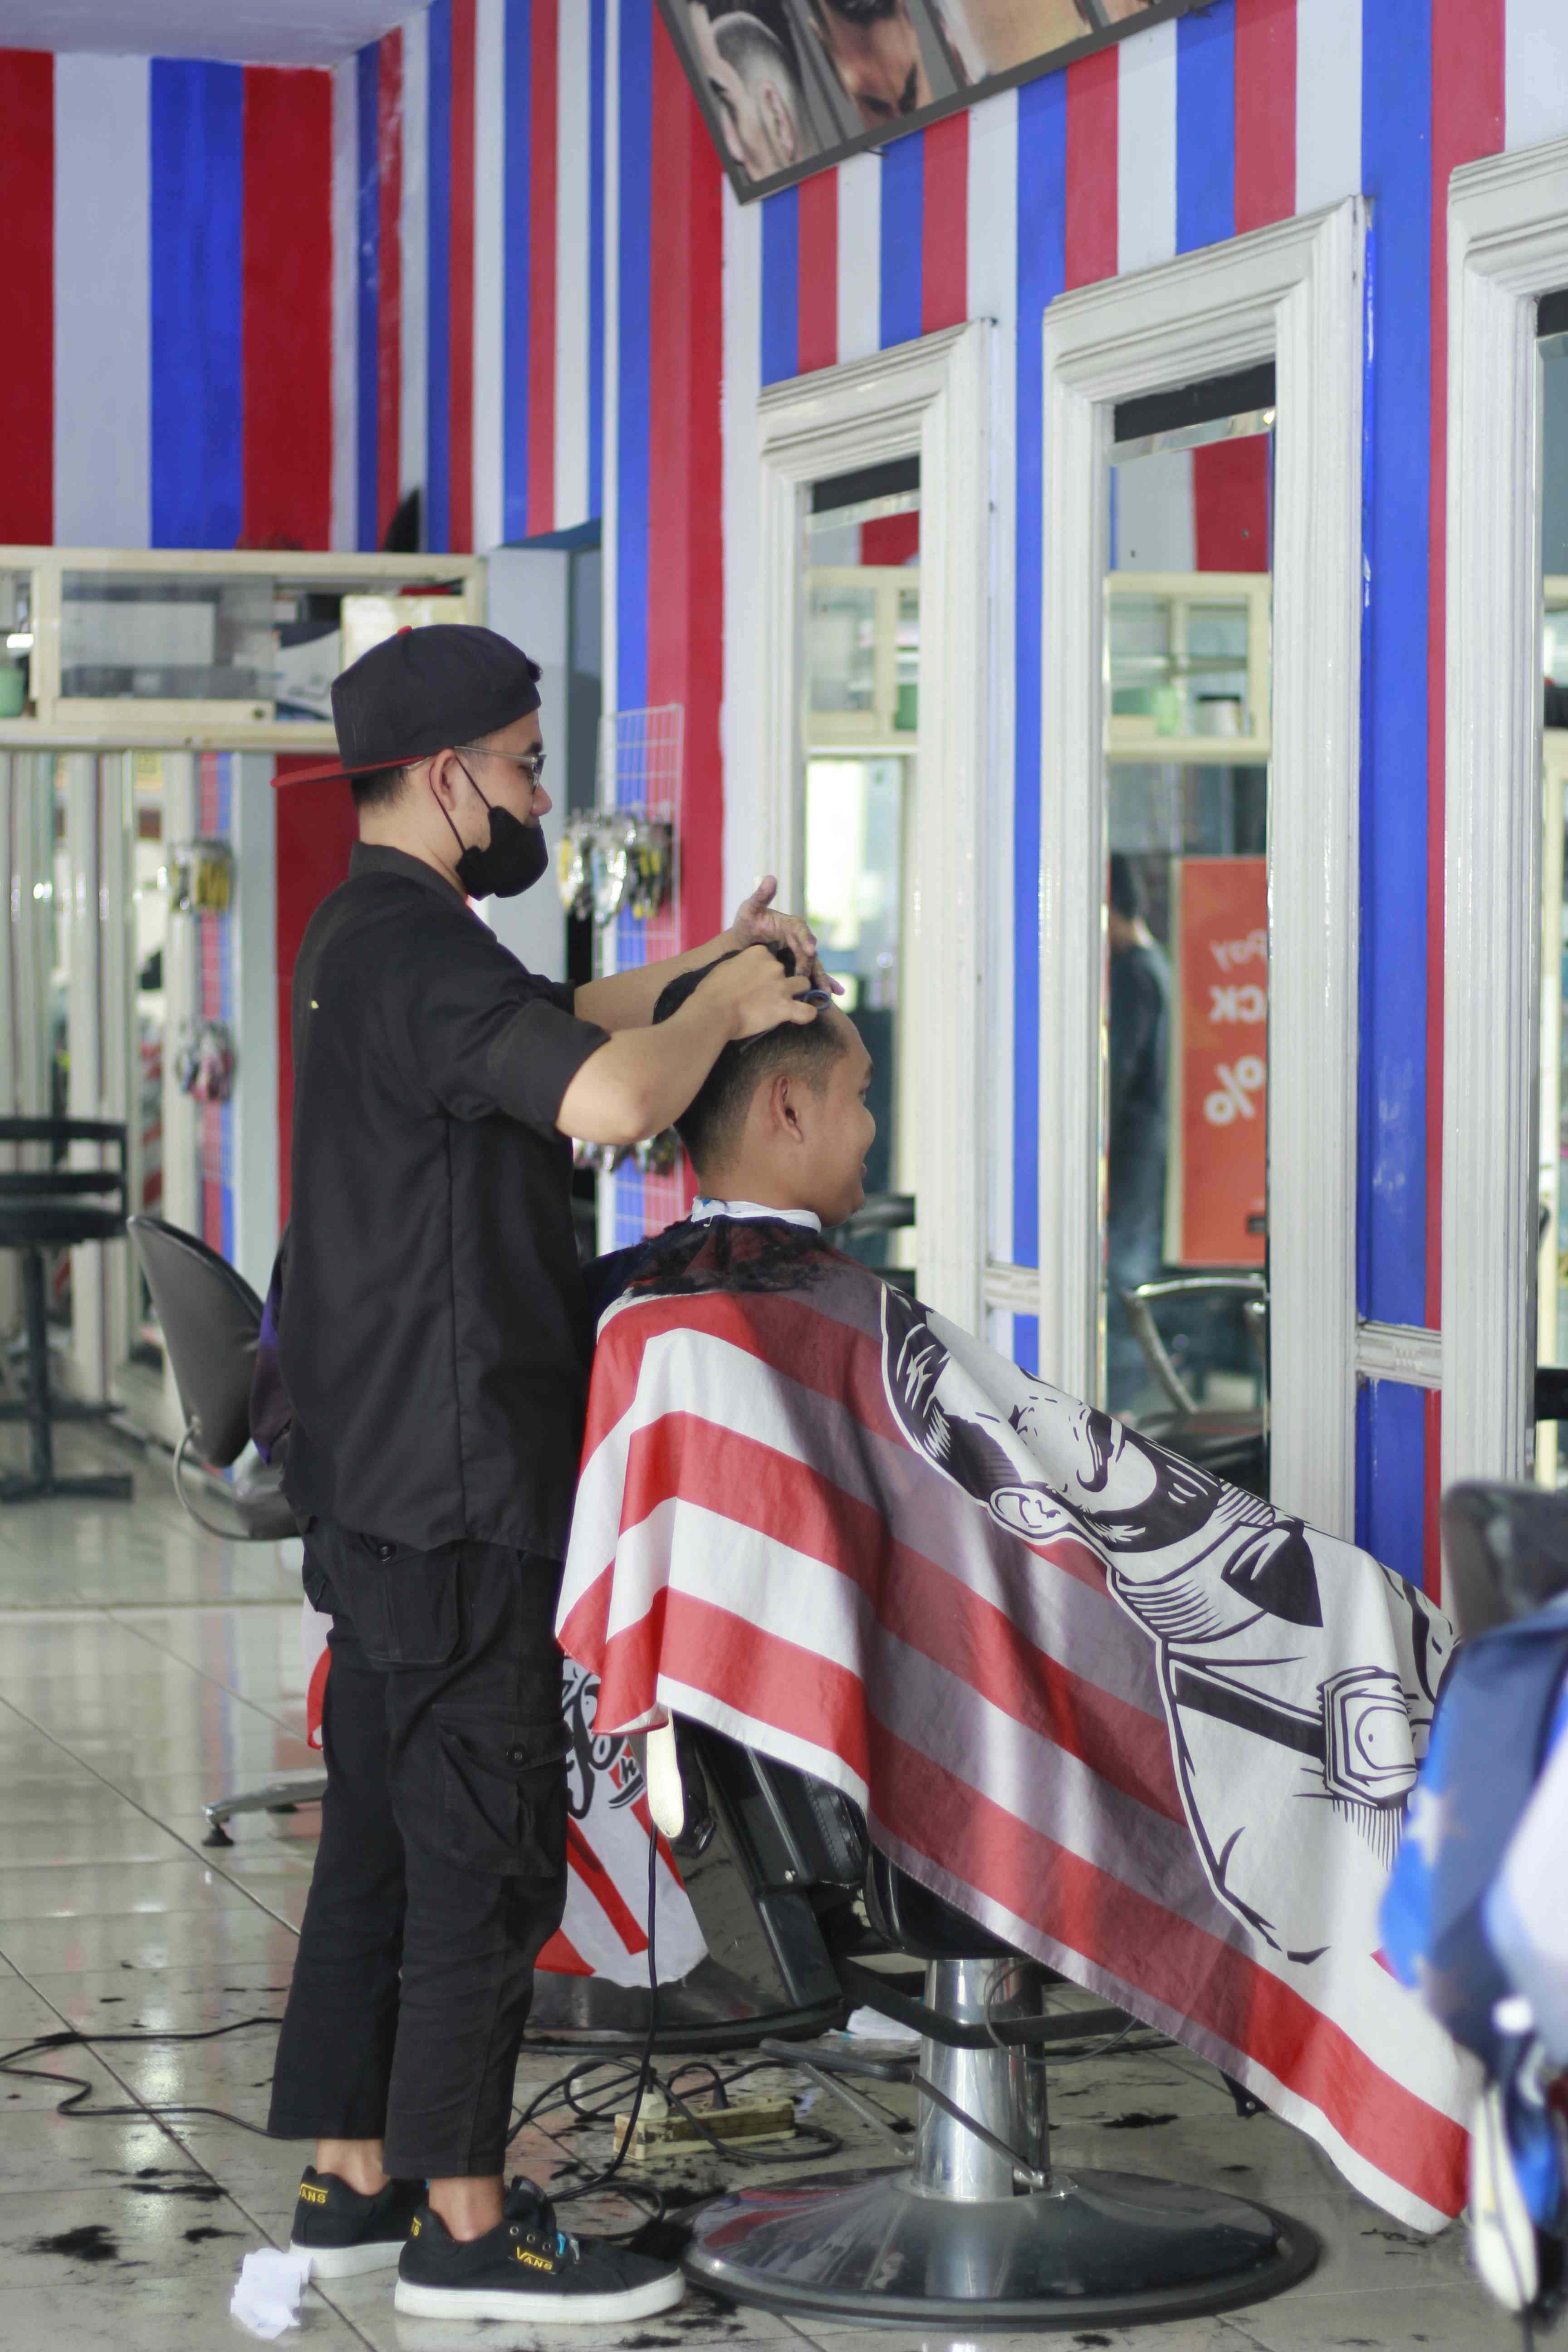 Tempat Cukur Rambut Di Kecamatan Klojen Terbaik